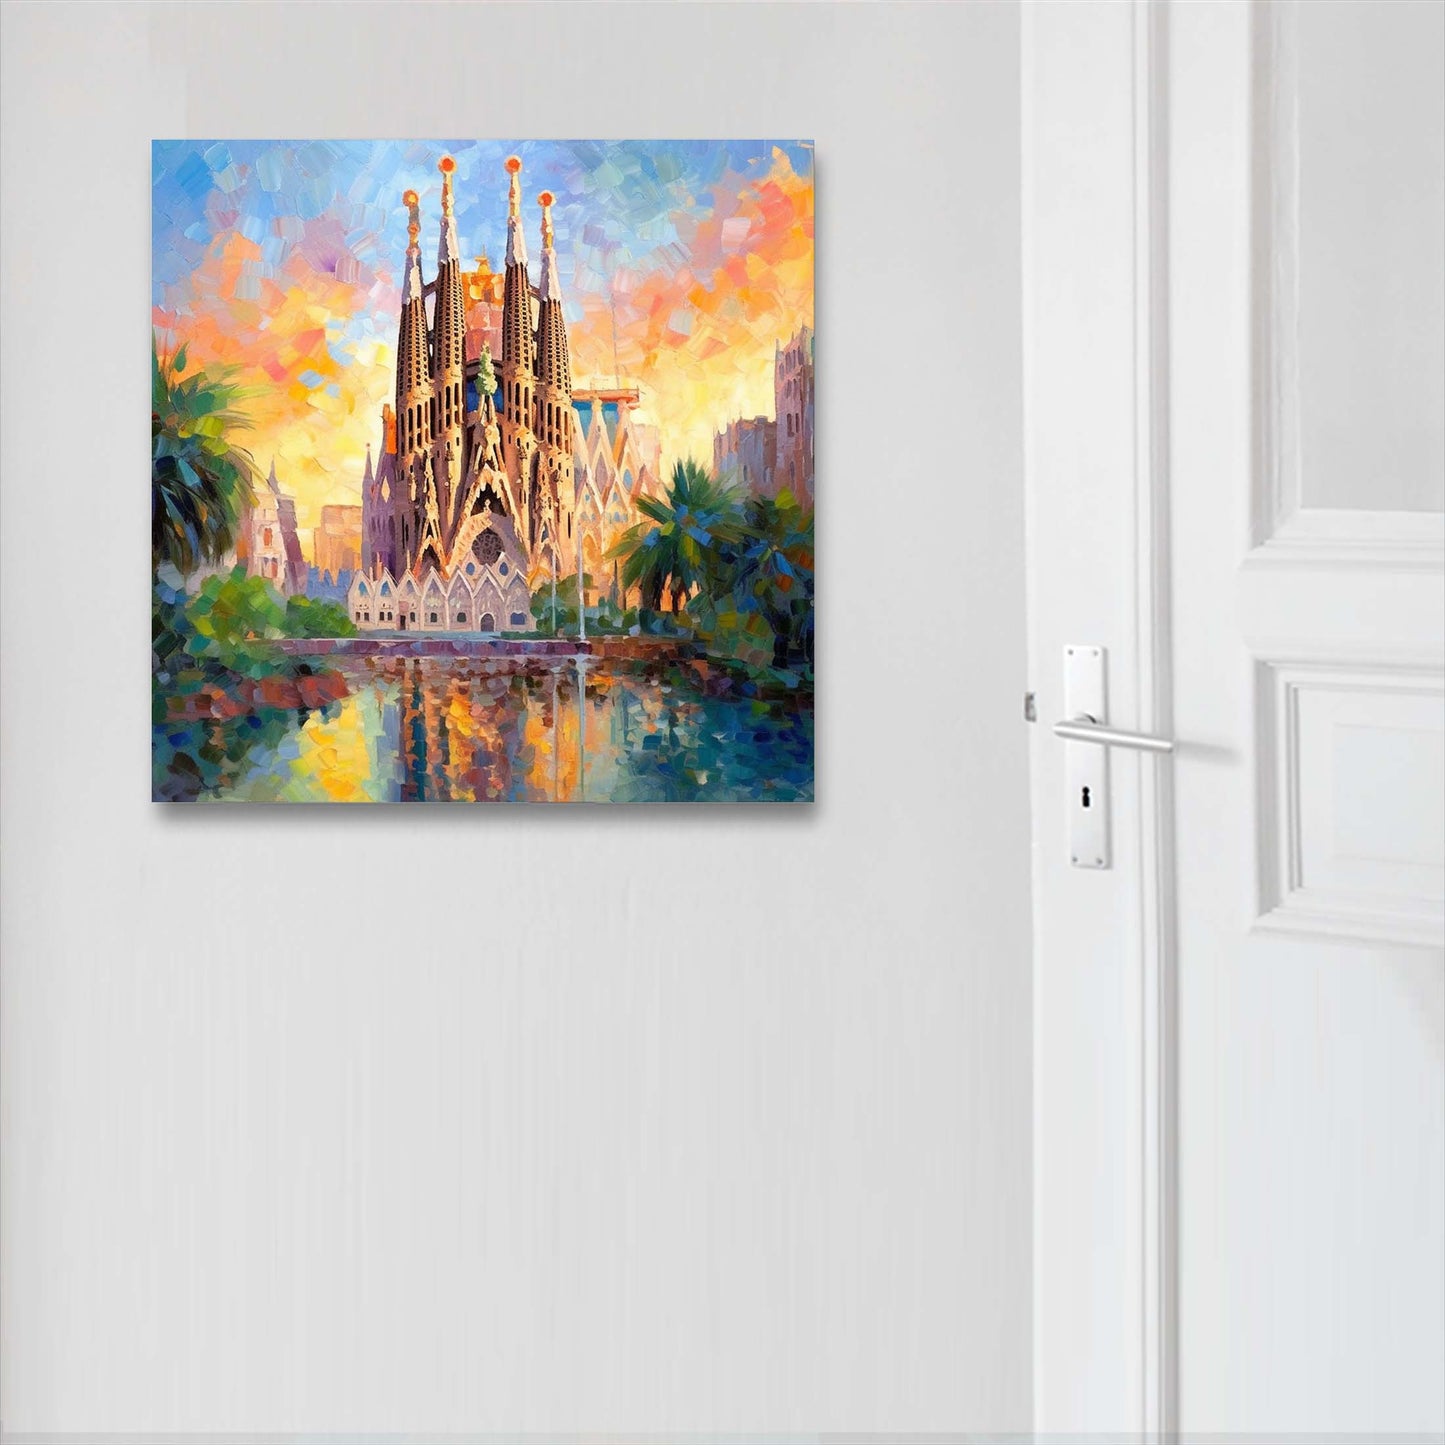 Barcelona Sagrada Familia - Wandbild in der Stilrichtung des Impressionismus